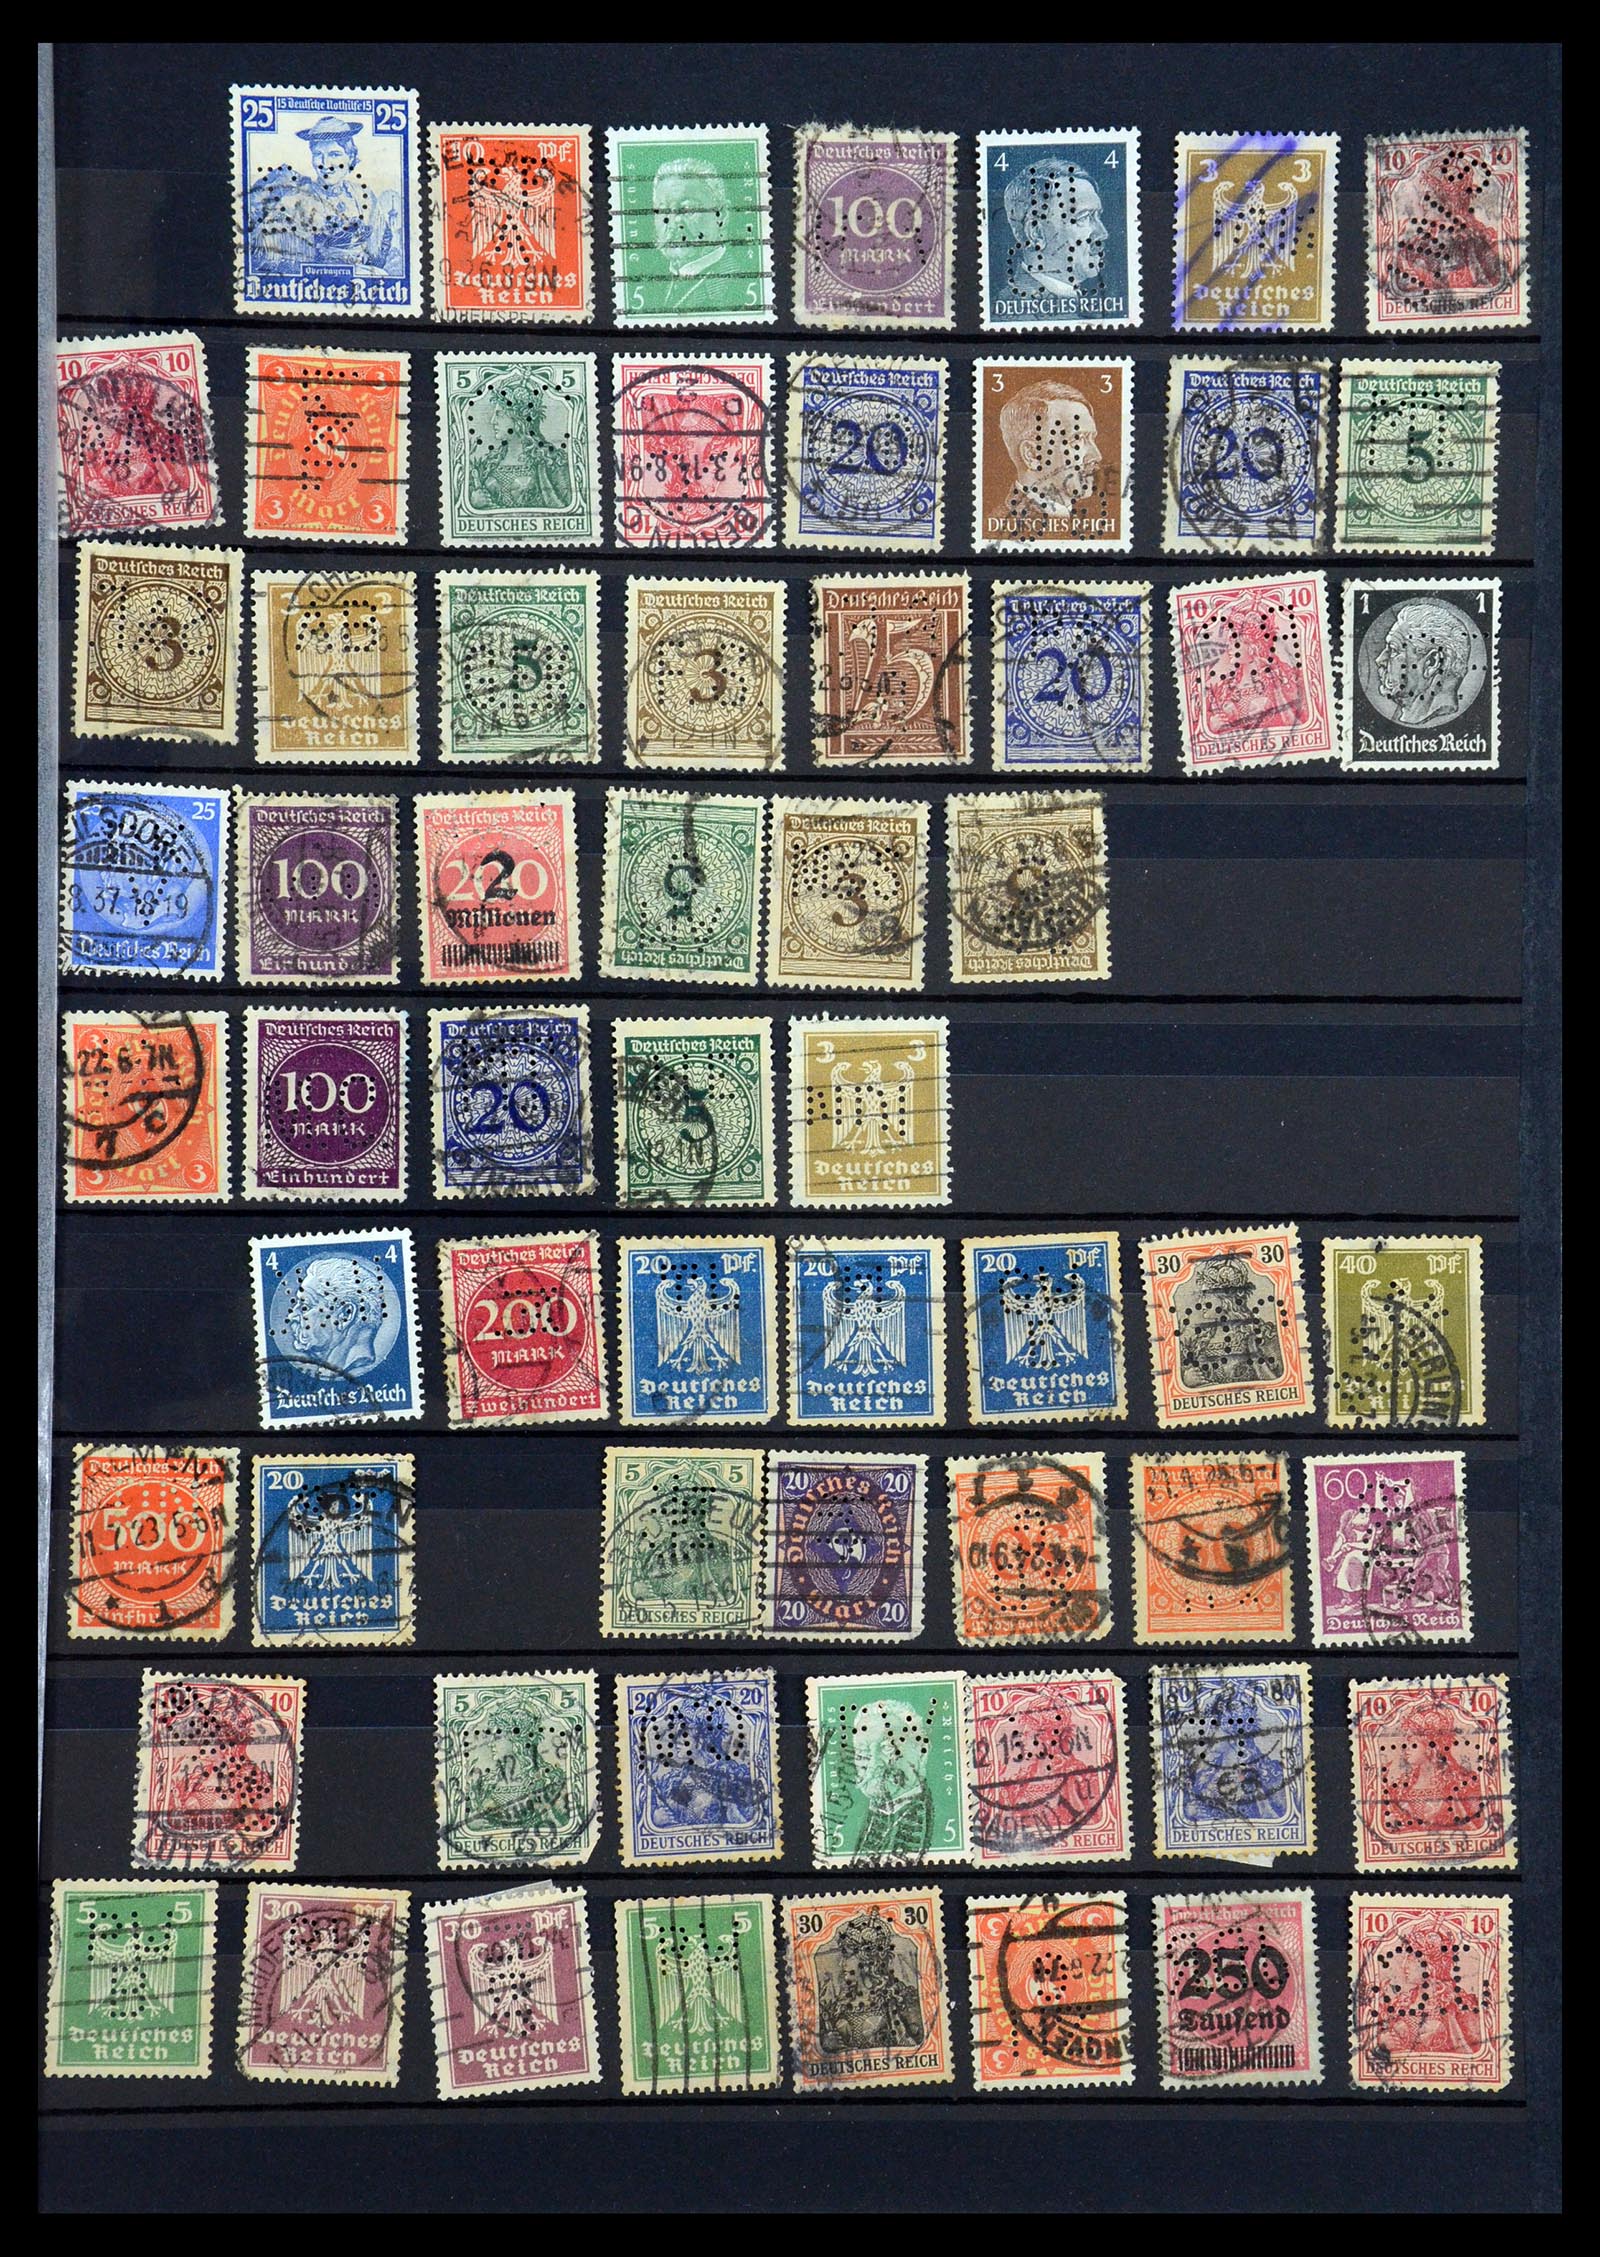 35183 049 - Stamp Collection 35183 German Reich perfins 1880-1945.